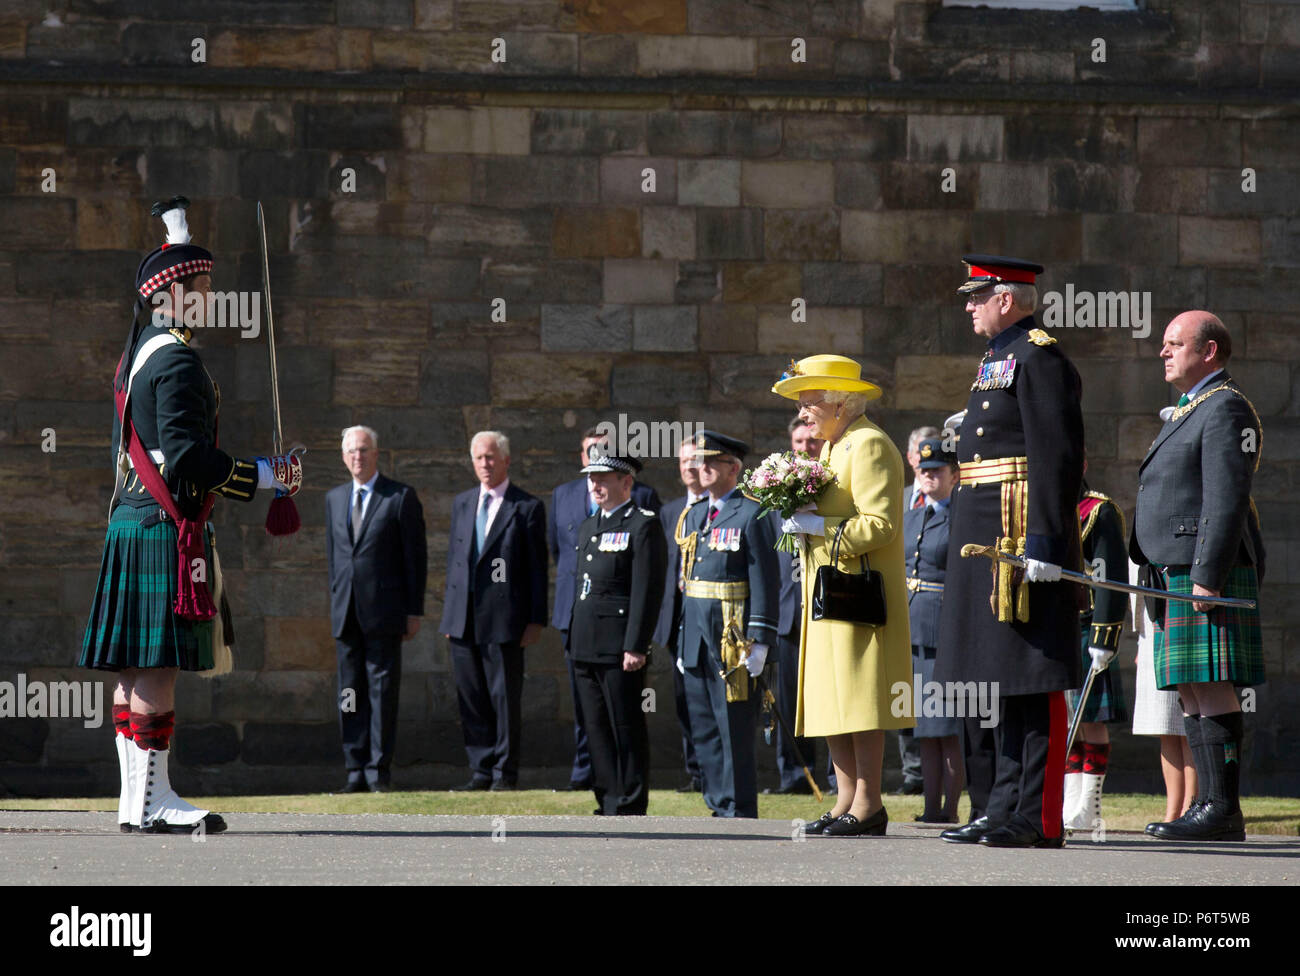 Queen Elizabeth II riceve le chiavi da Edimburgo di Lord Provost Frank Ross durante la cerimonia delle chiavi presso il Palazzo di Holyroodhouse di Edimburgo. Foto Stock